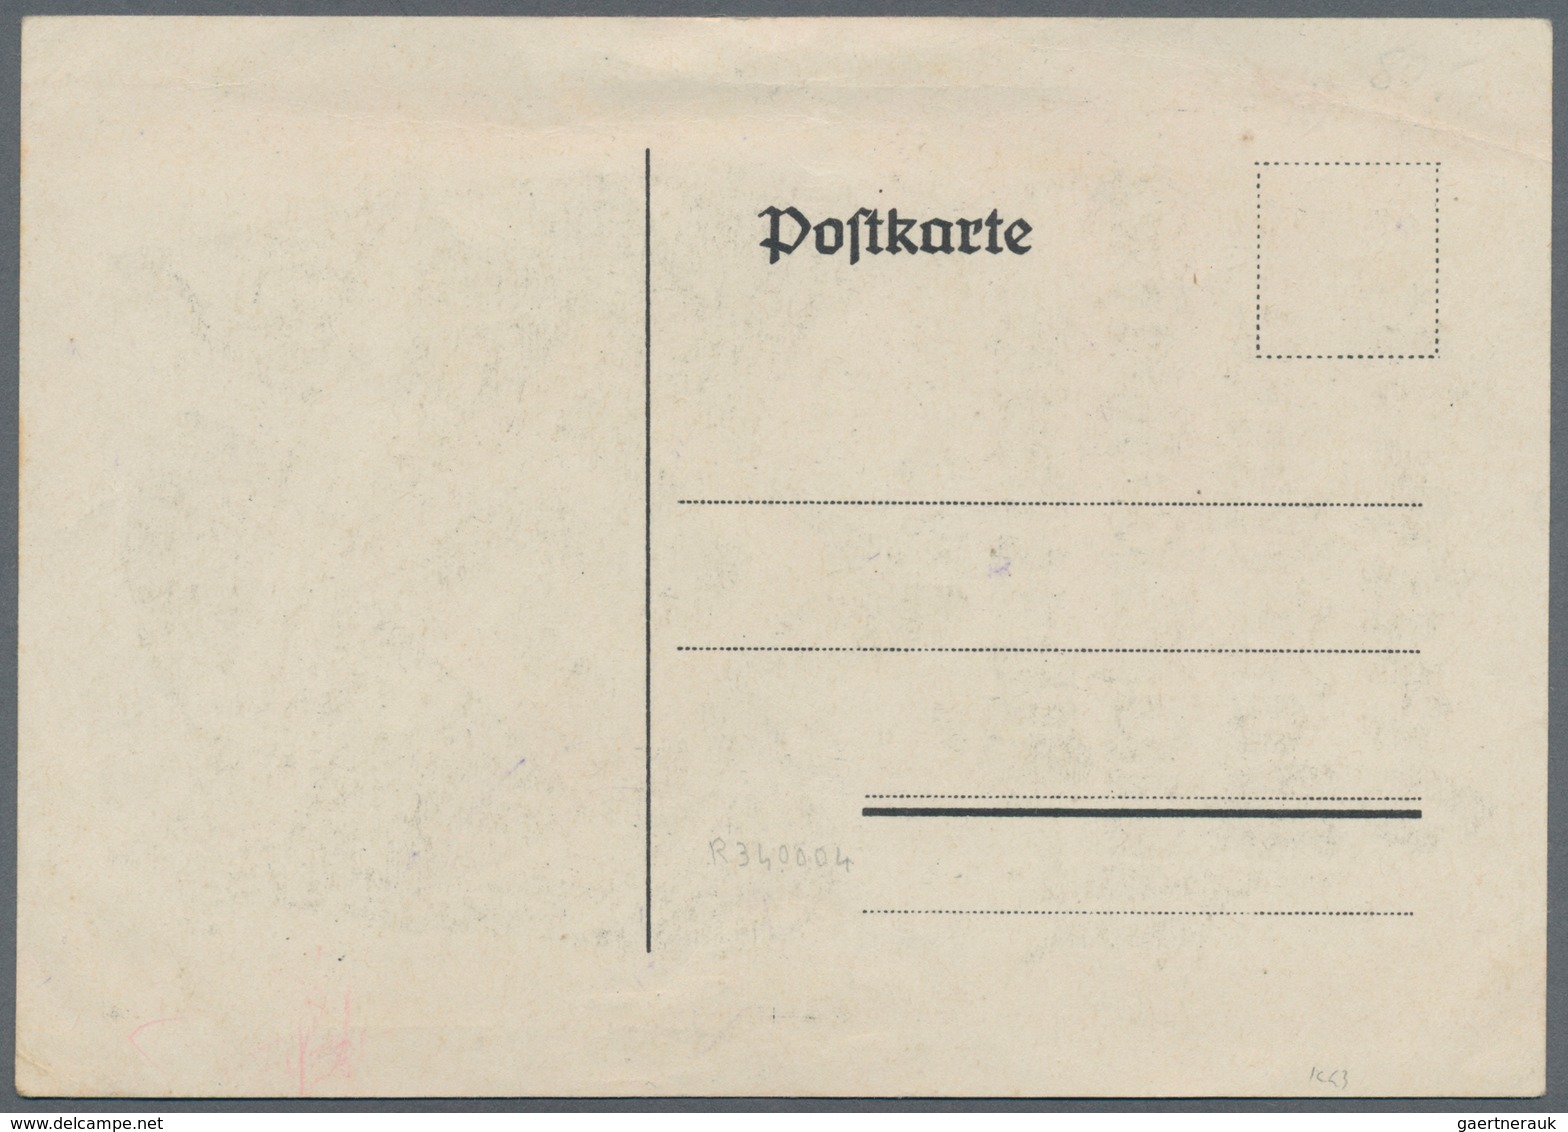 Ansichtskarten: Propaganda: 1925. Deutsche Völkische Reichstagung Elberfeld 18 -21 Juni 1925 / Germa - Political Parties & Elections